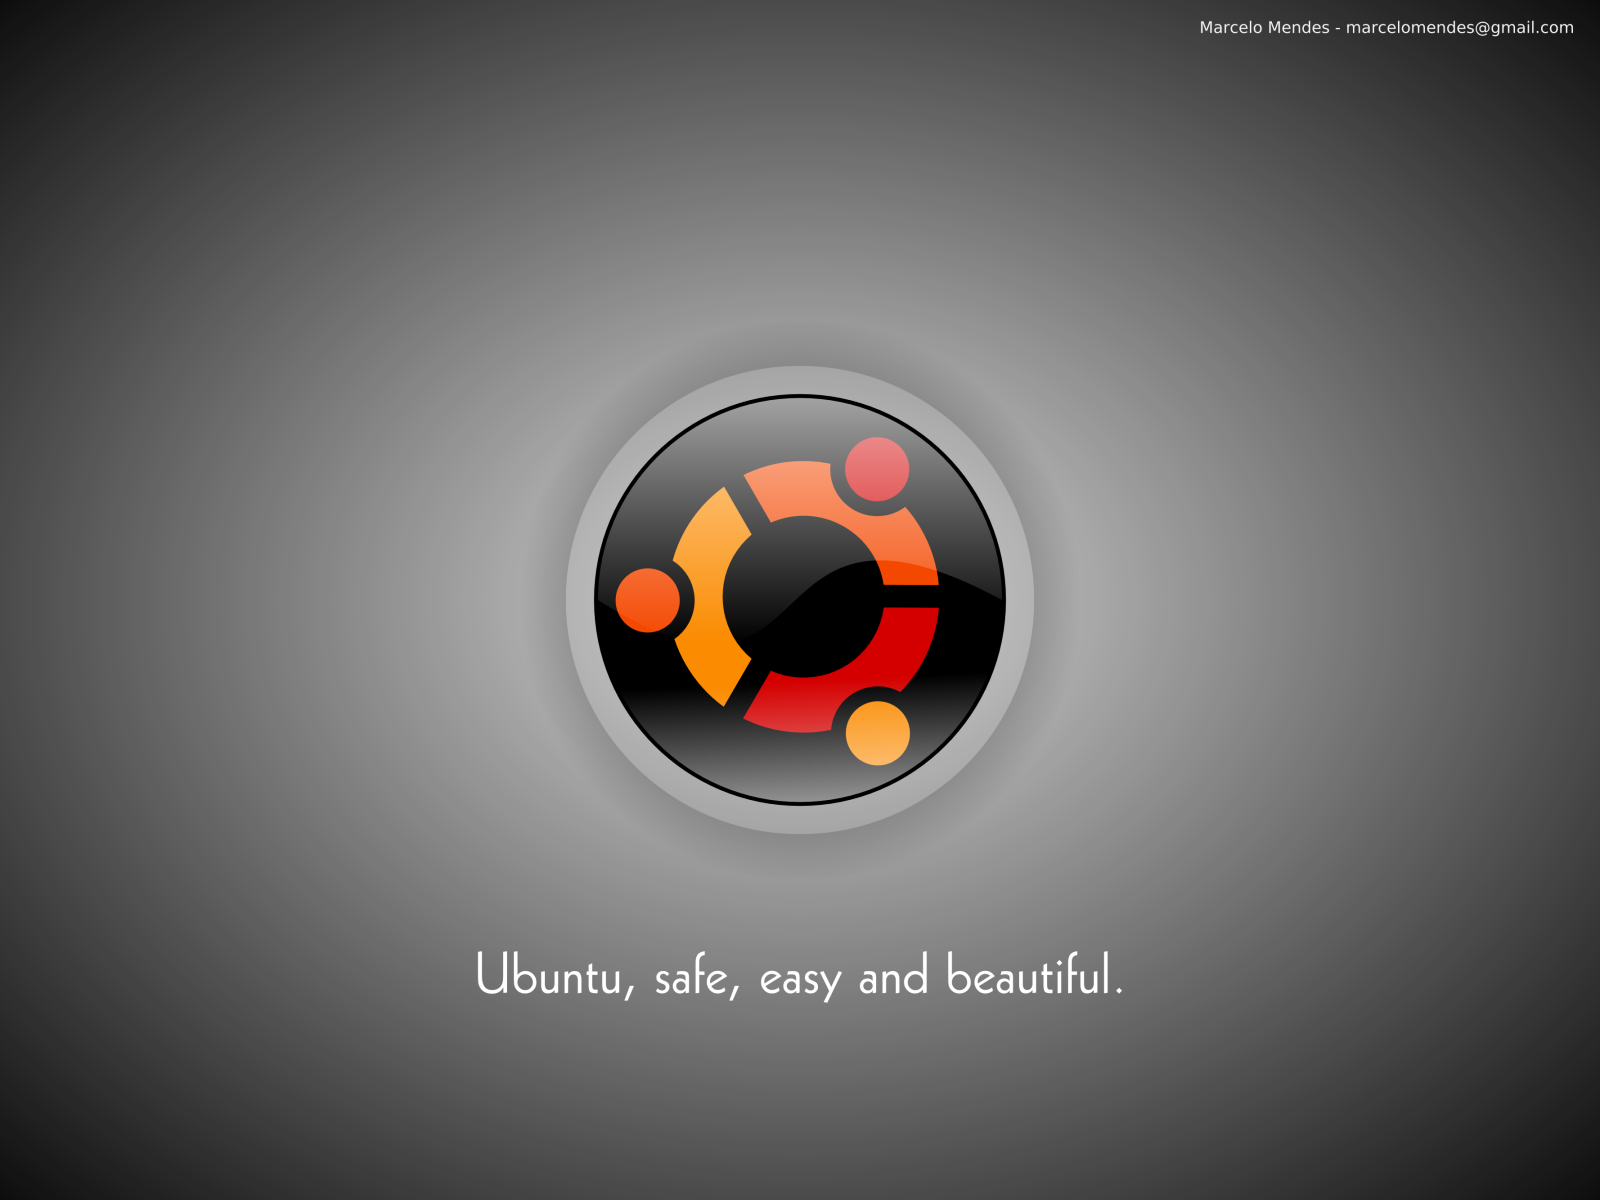 ubuntu wallpaper easy 250x250 Wallpapers Ubuntu 1600x1200